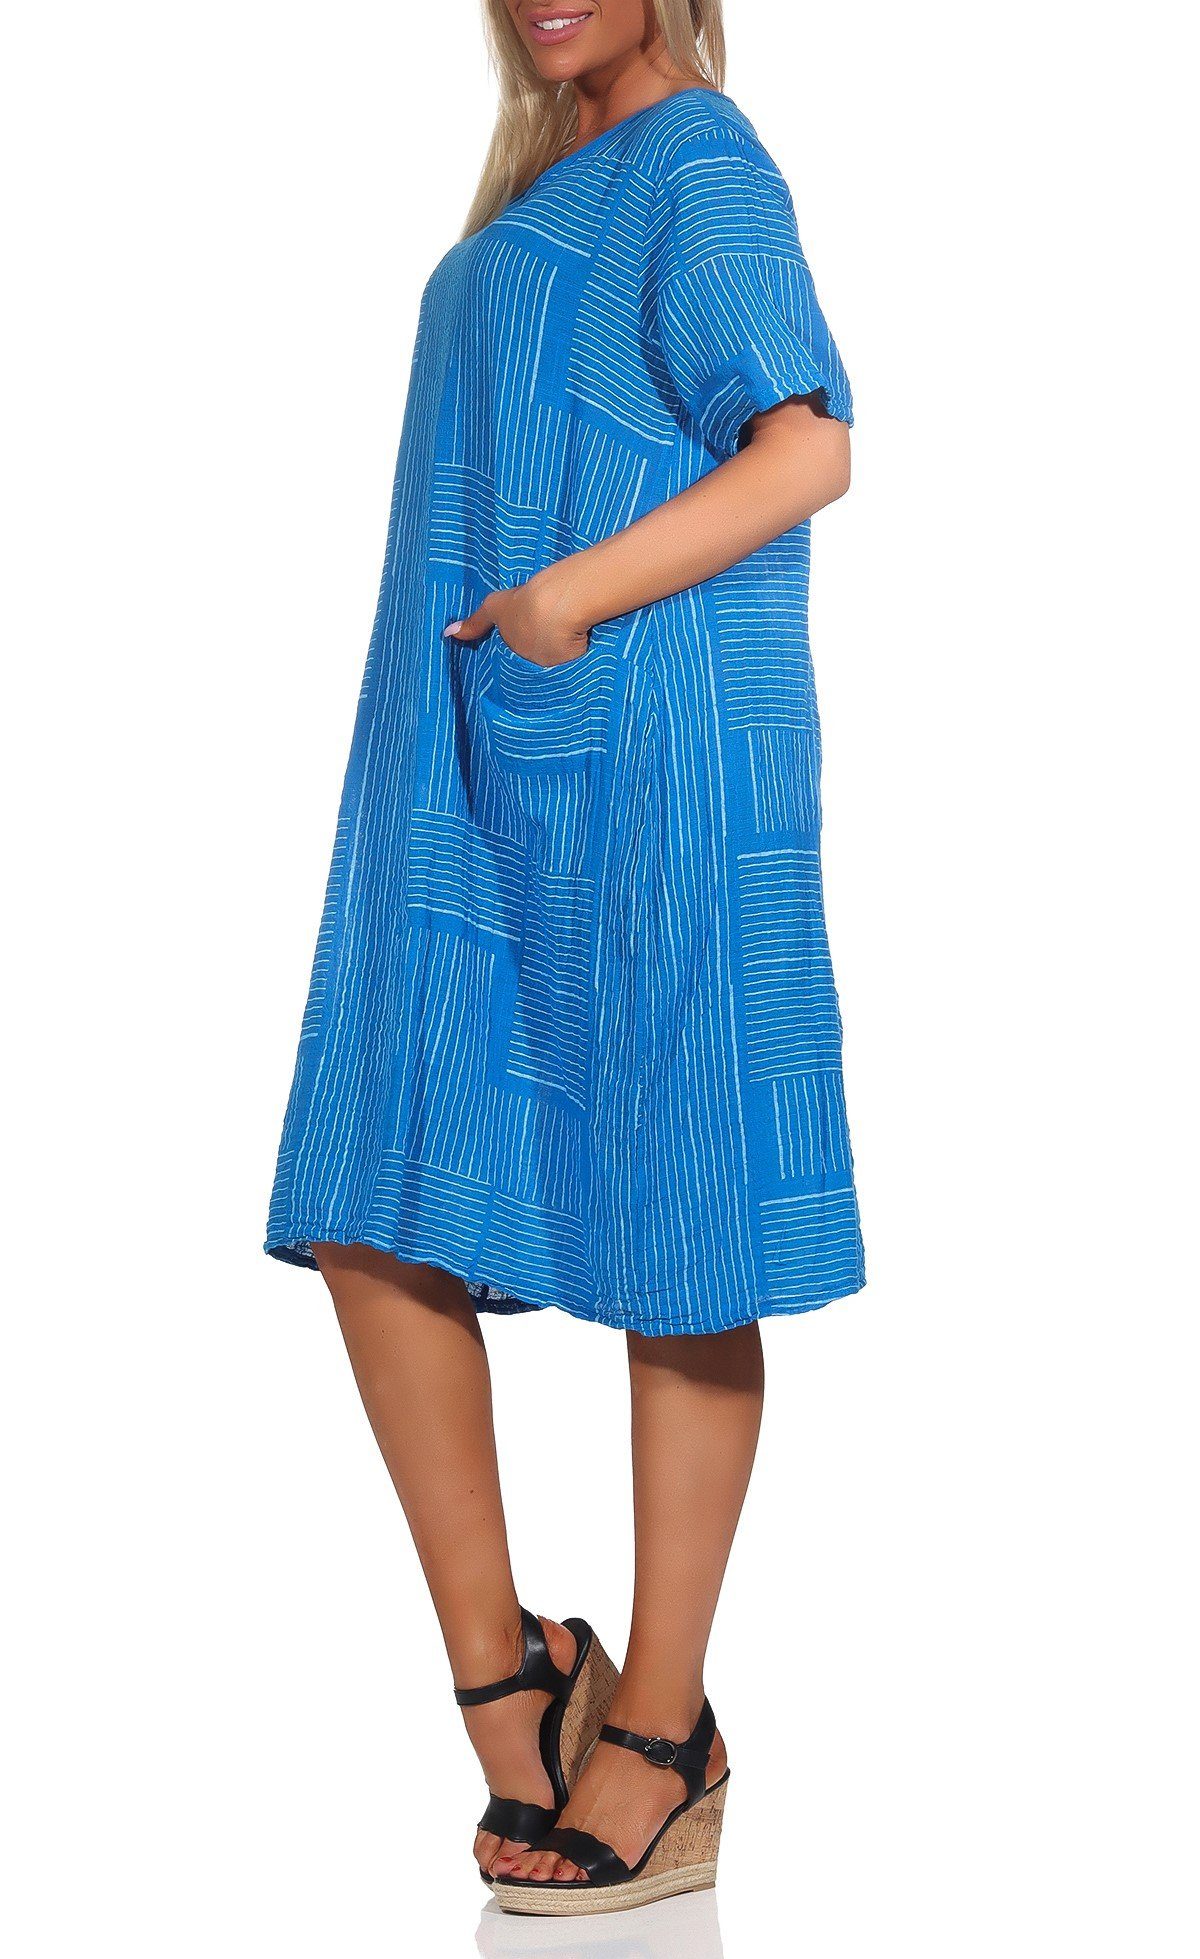 % Mississhop Strandkleid Baumwolle Baumwollkleid M.377 Himmelblau Casual 100 Shirtkleid Sommerkleid